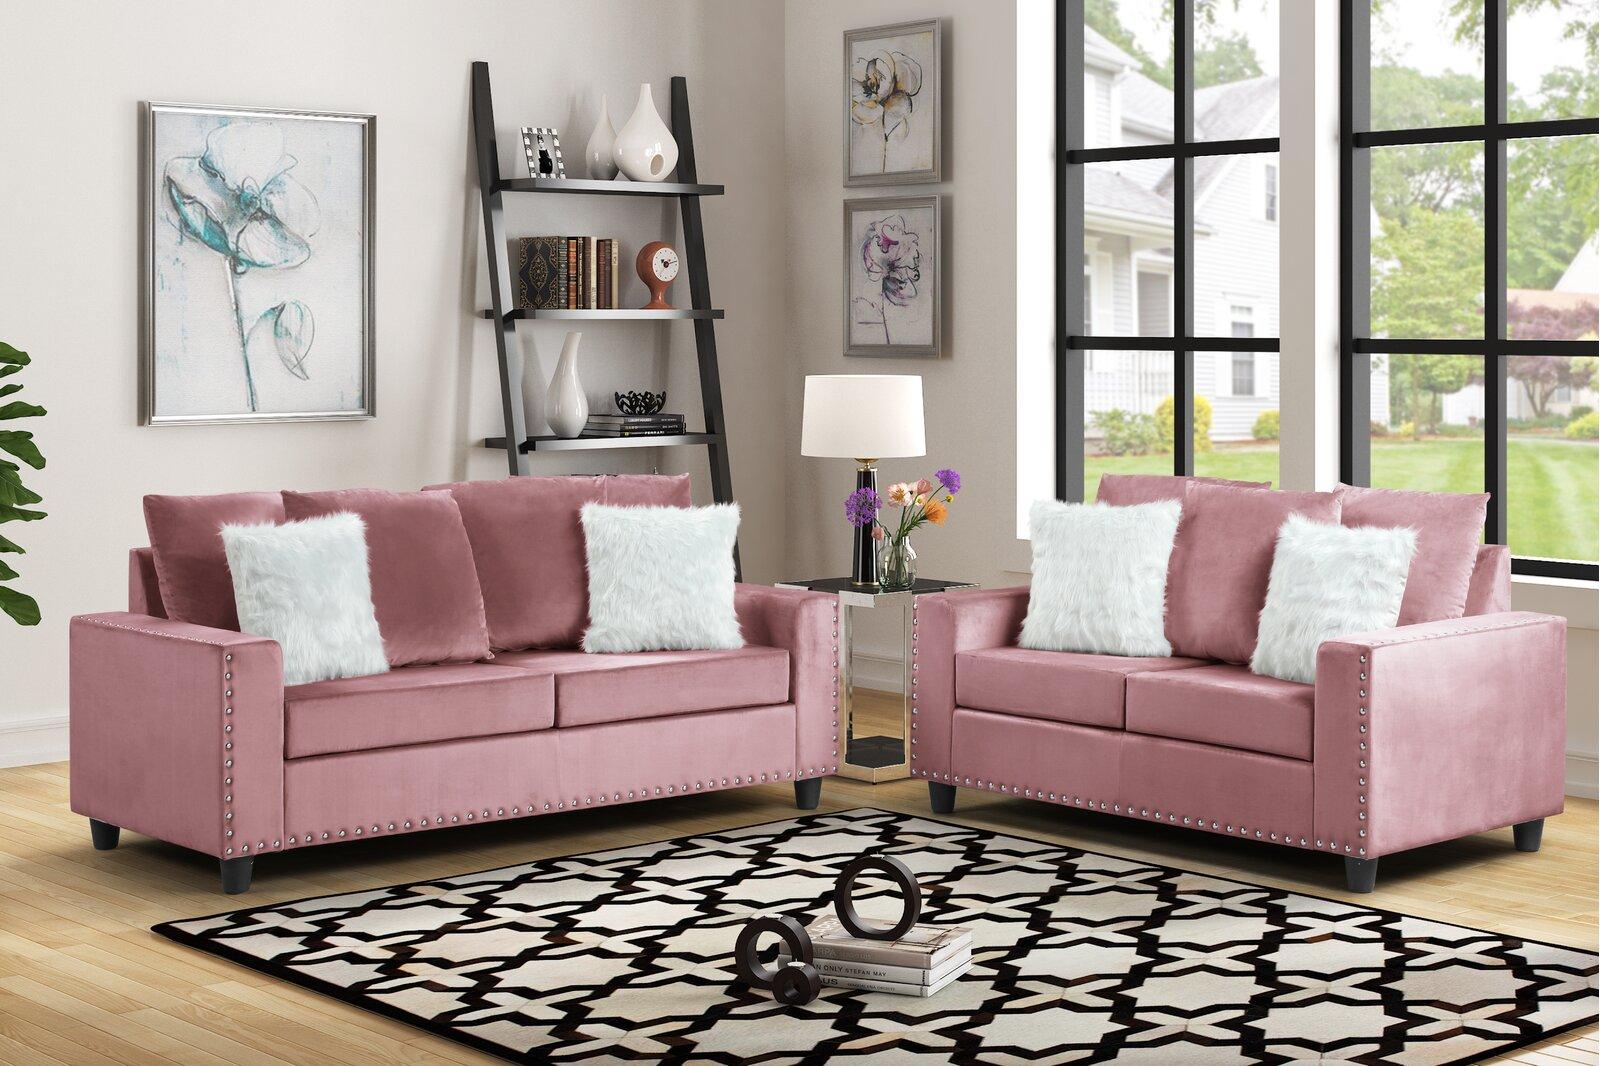 

    
Galaxy Home Furniture MORRIS Loveseat Pink MORRIS-PINK-Loveseat
